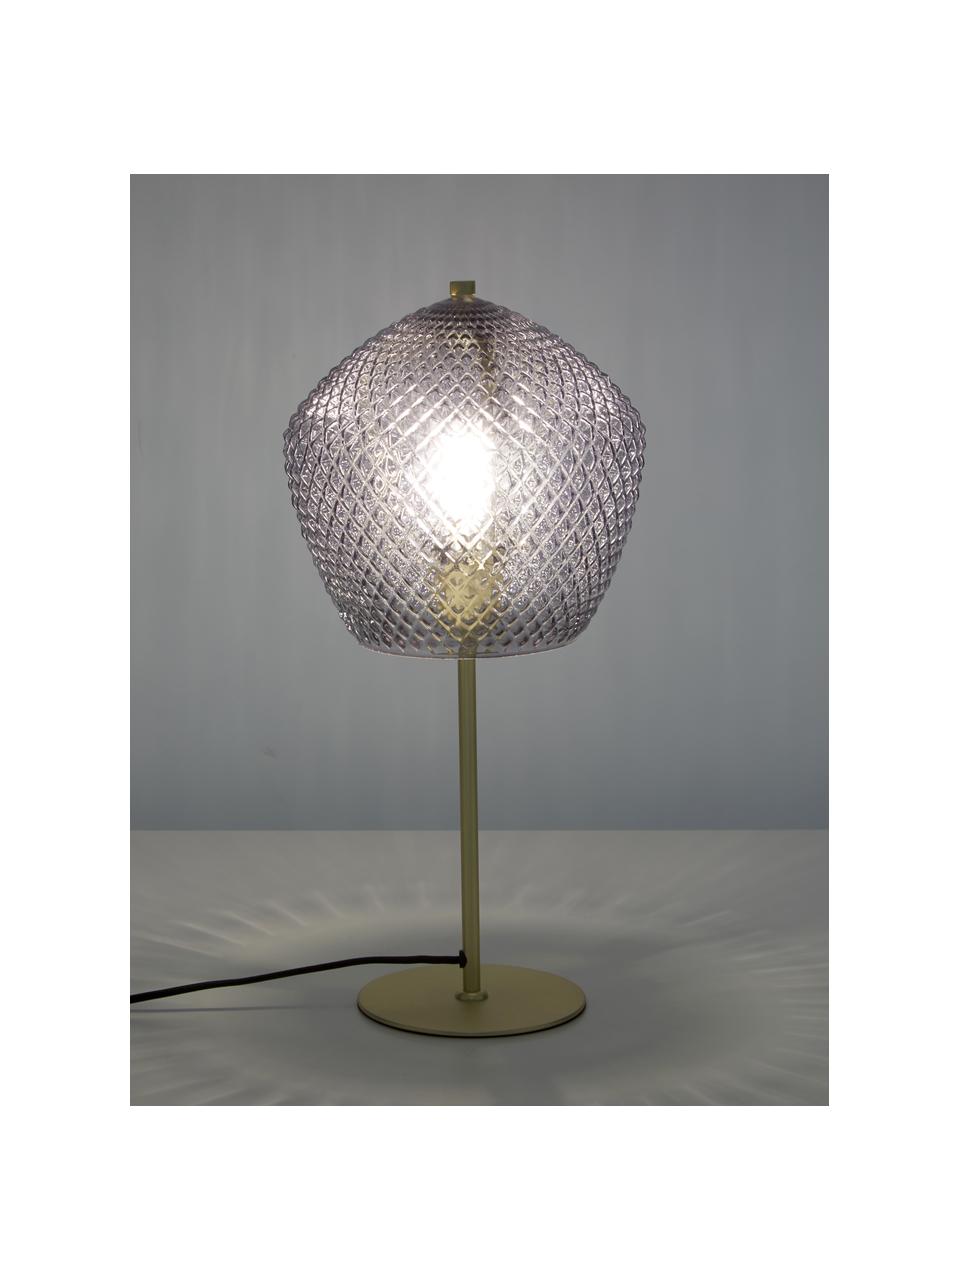 Tischlampe Orbiform mit Glasschirm, Lampenschirm: Glas, Lampenfuß: Metall, beschichtet, Grau, Goldfarben, Ø 23 x H 47 cm